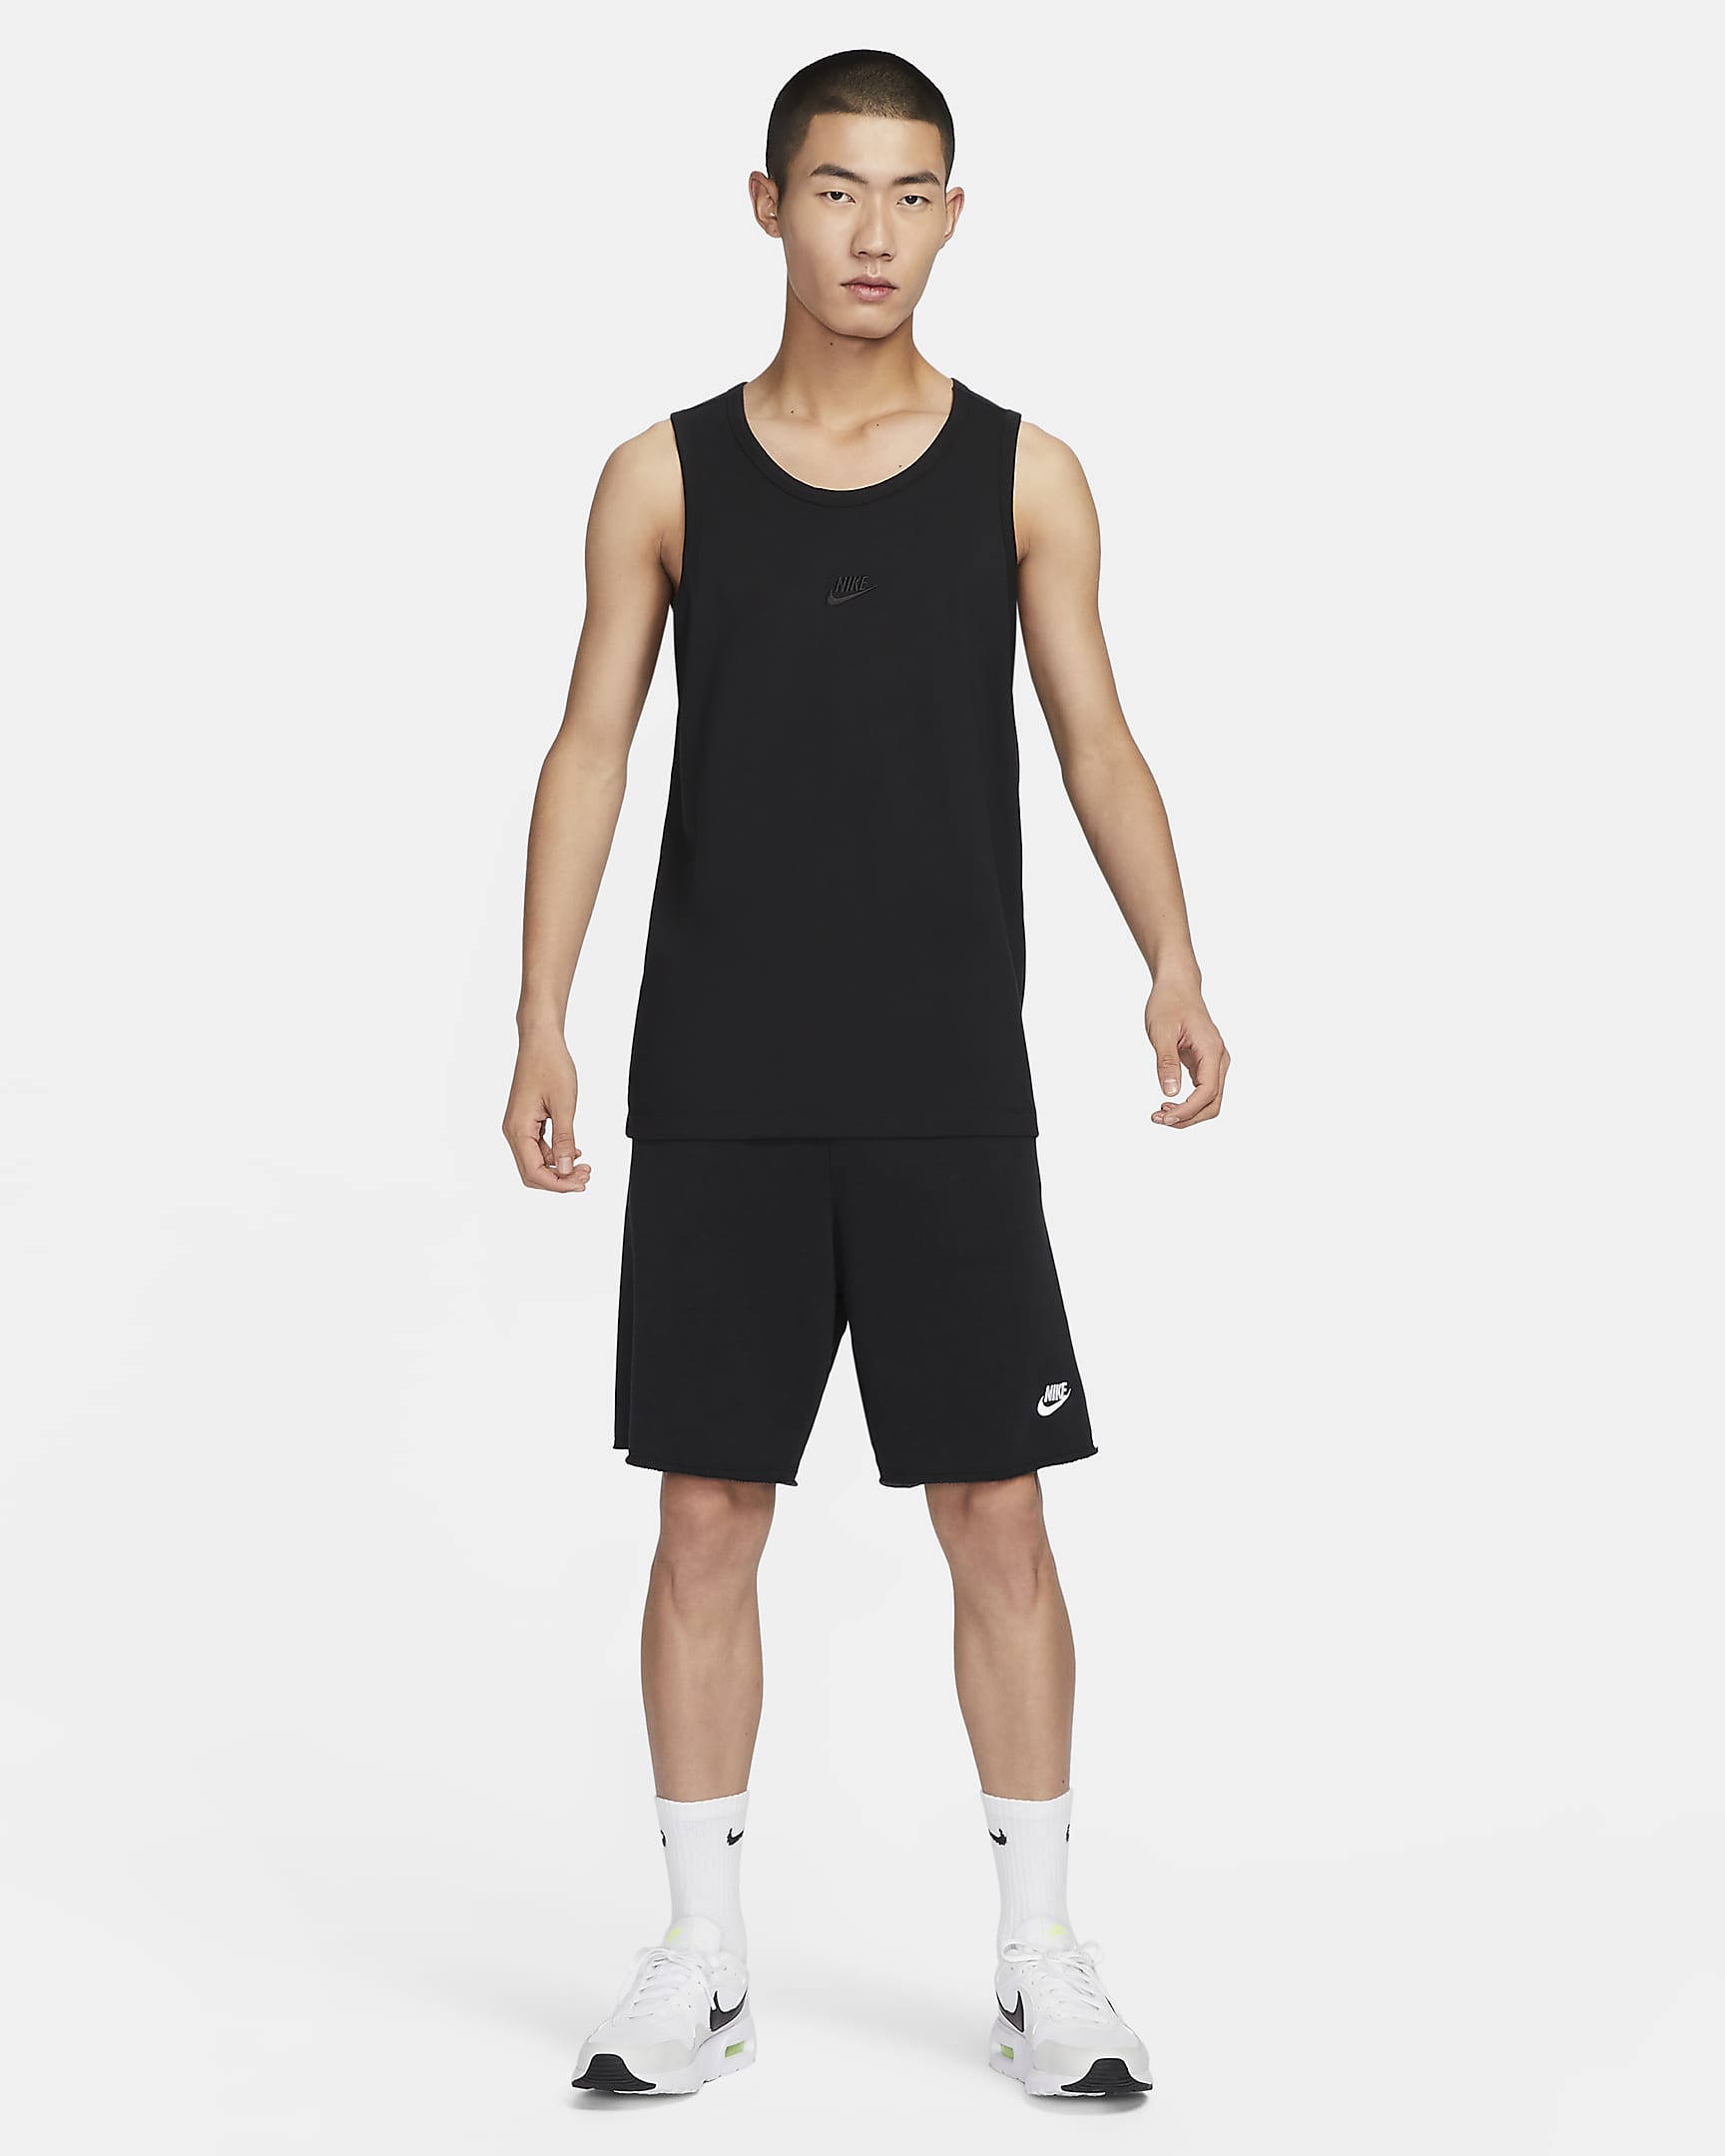 Nike Sportswear Men's Tank Top. Nike ID